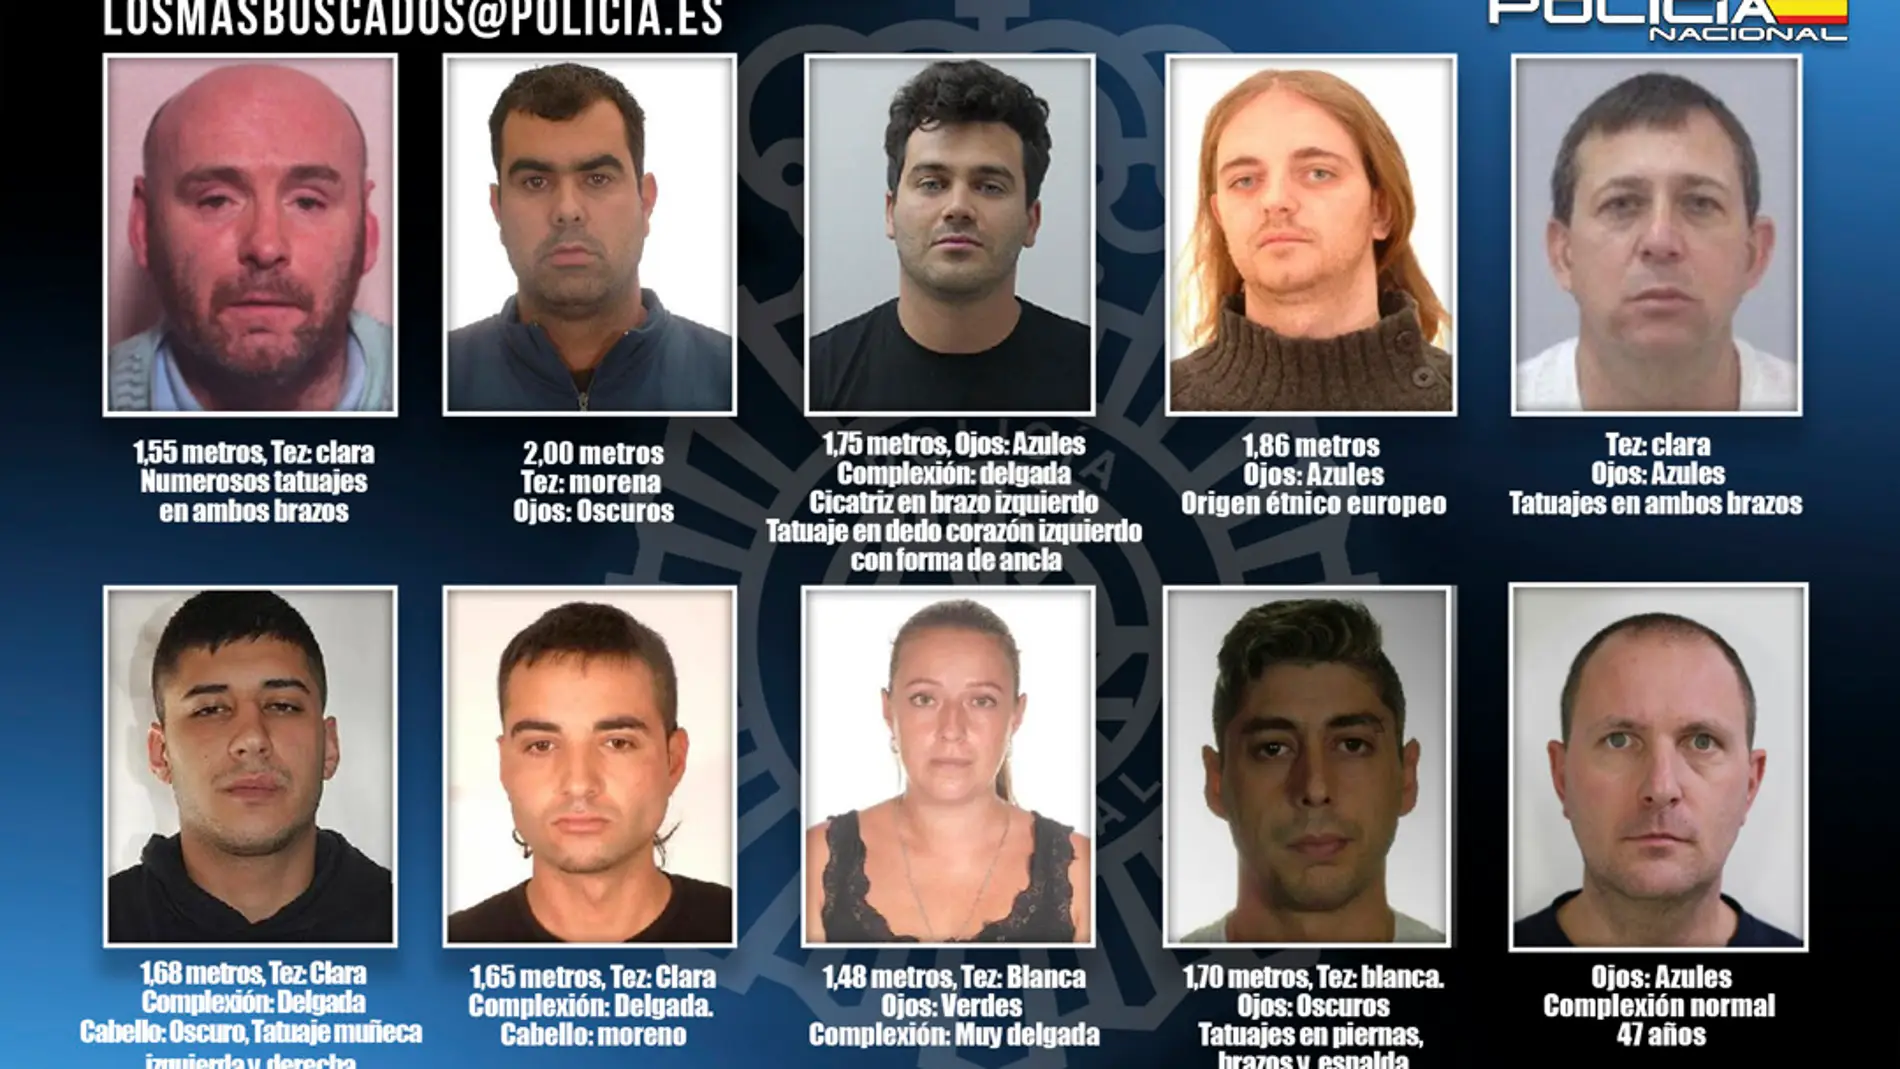  Si has visto a alguna de esta personas llama a la Policía: los 10 fugitivos más buscados en España